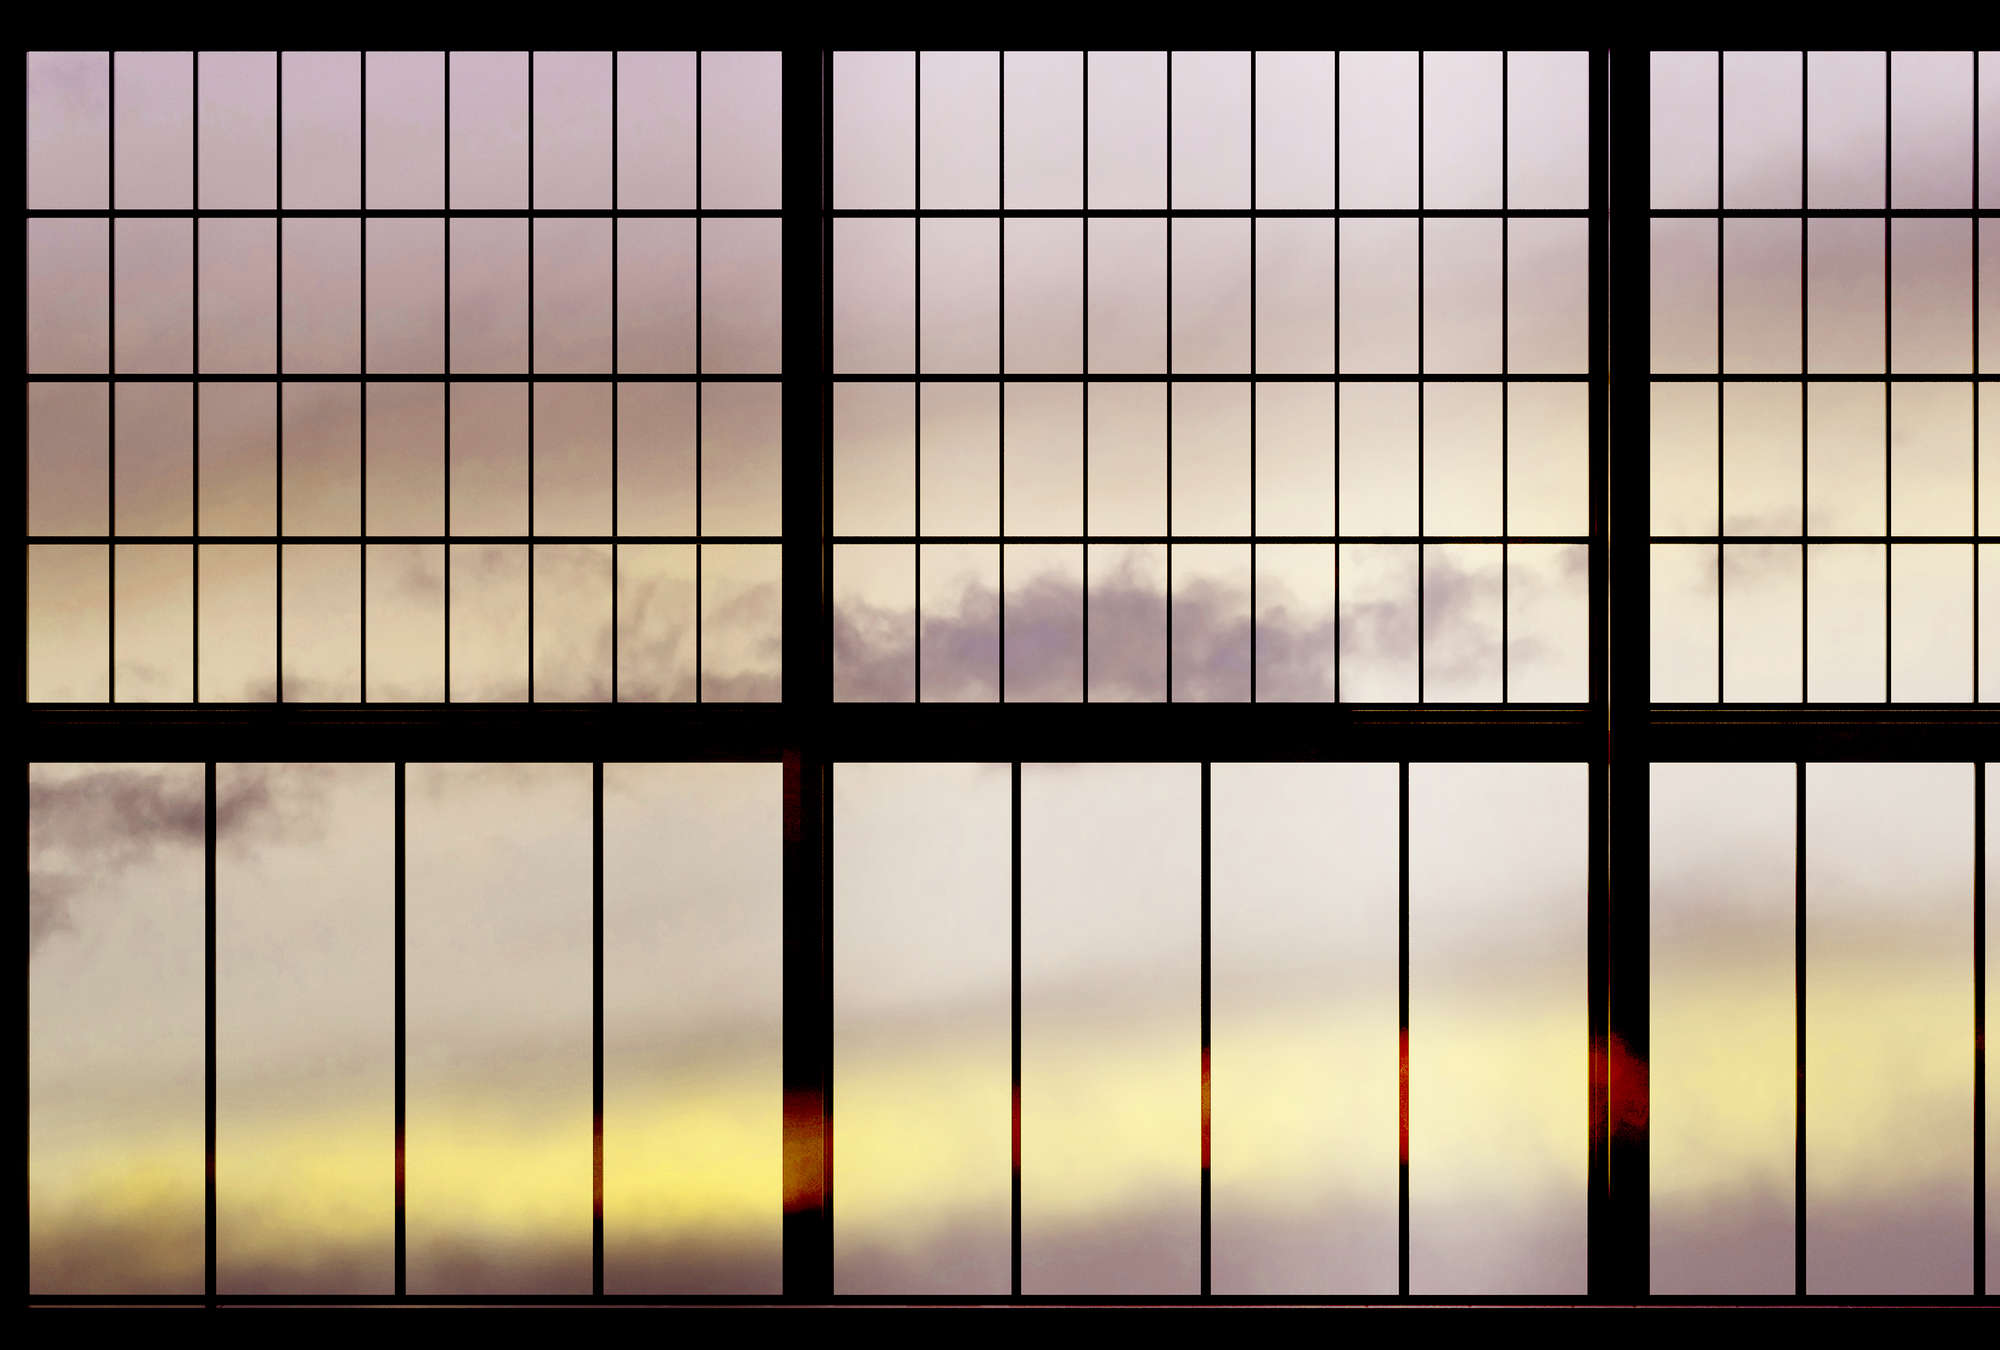             Sky 2 - papier peint fenêtre vue sur le lever du soleil - jaune, noir | structure intissé
        